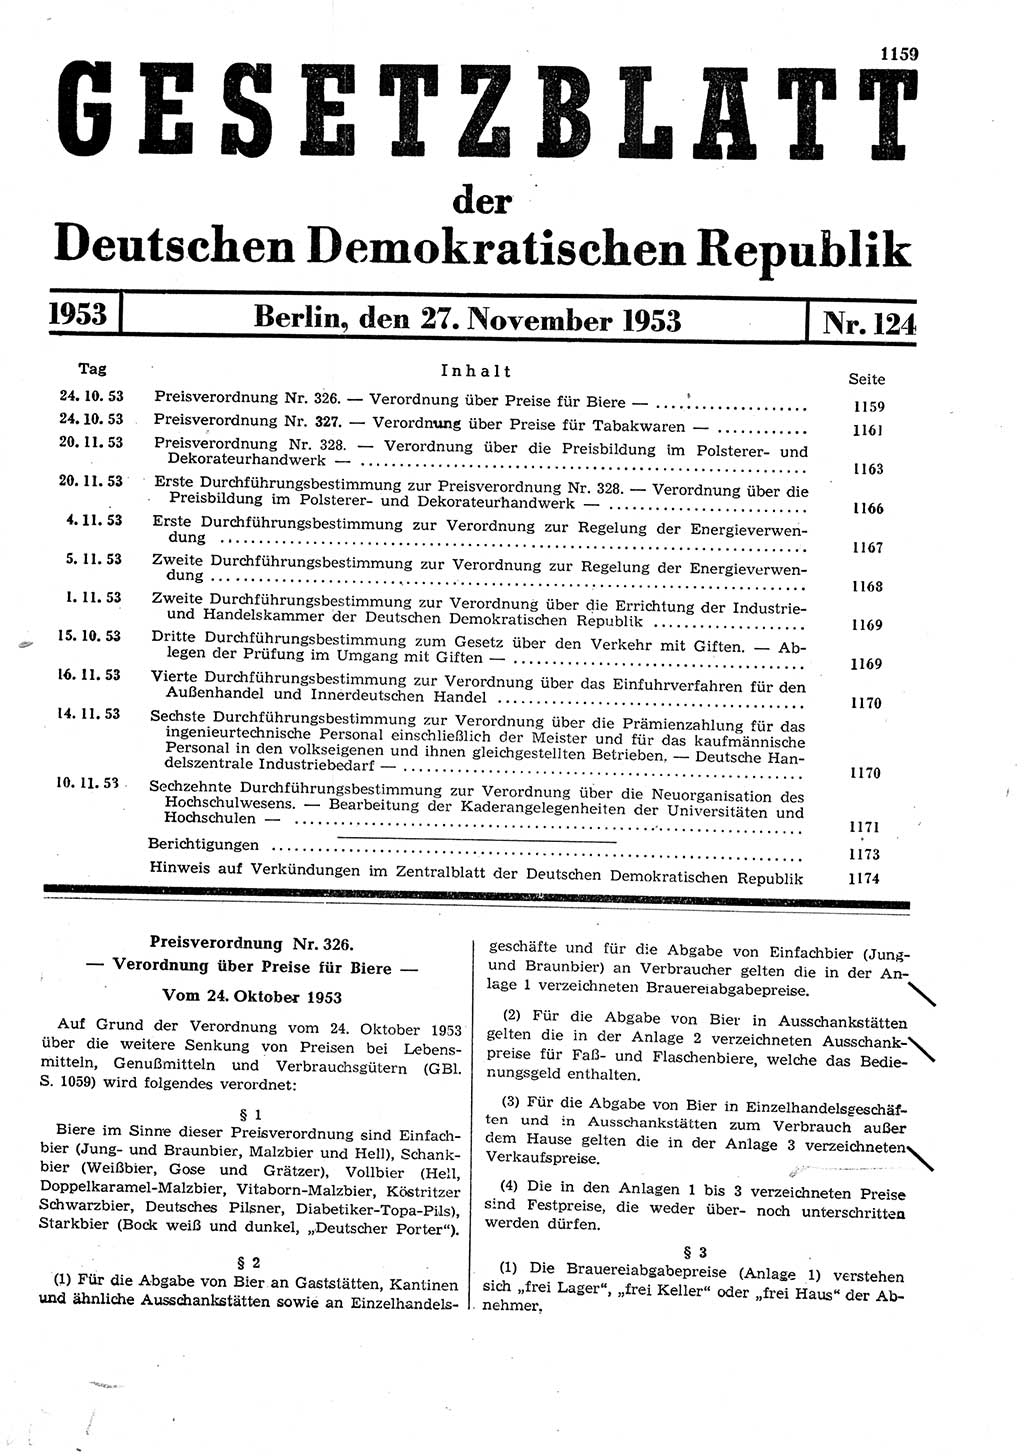 Gesetzblatt (GBl.) der Deutschen Demokratischen Republik (DDR) 1953, Seite 1159 (GBl. DDR 1953, S. 1159)